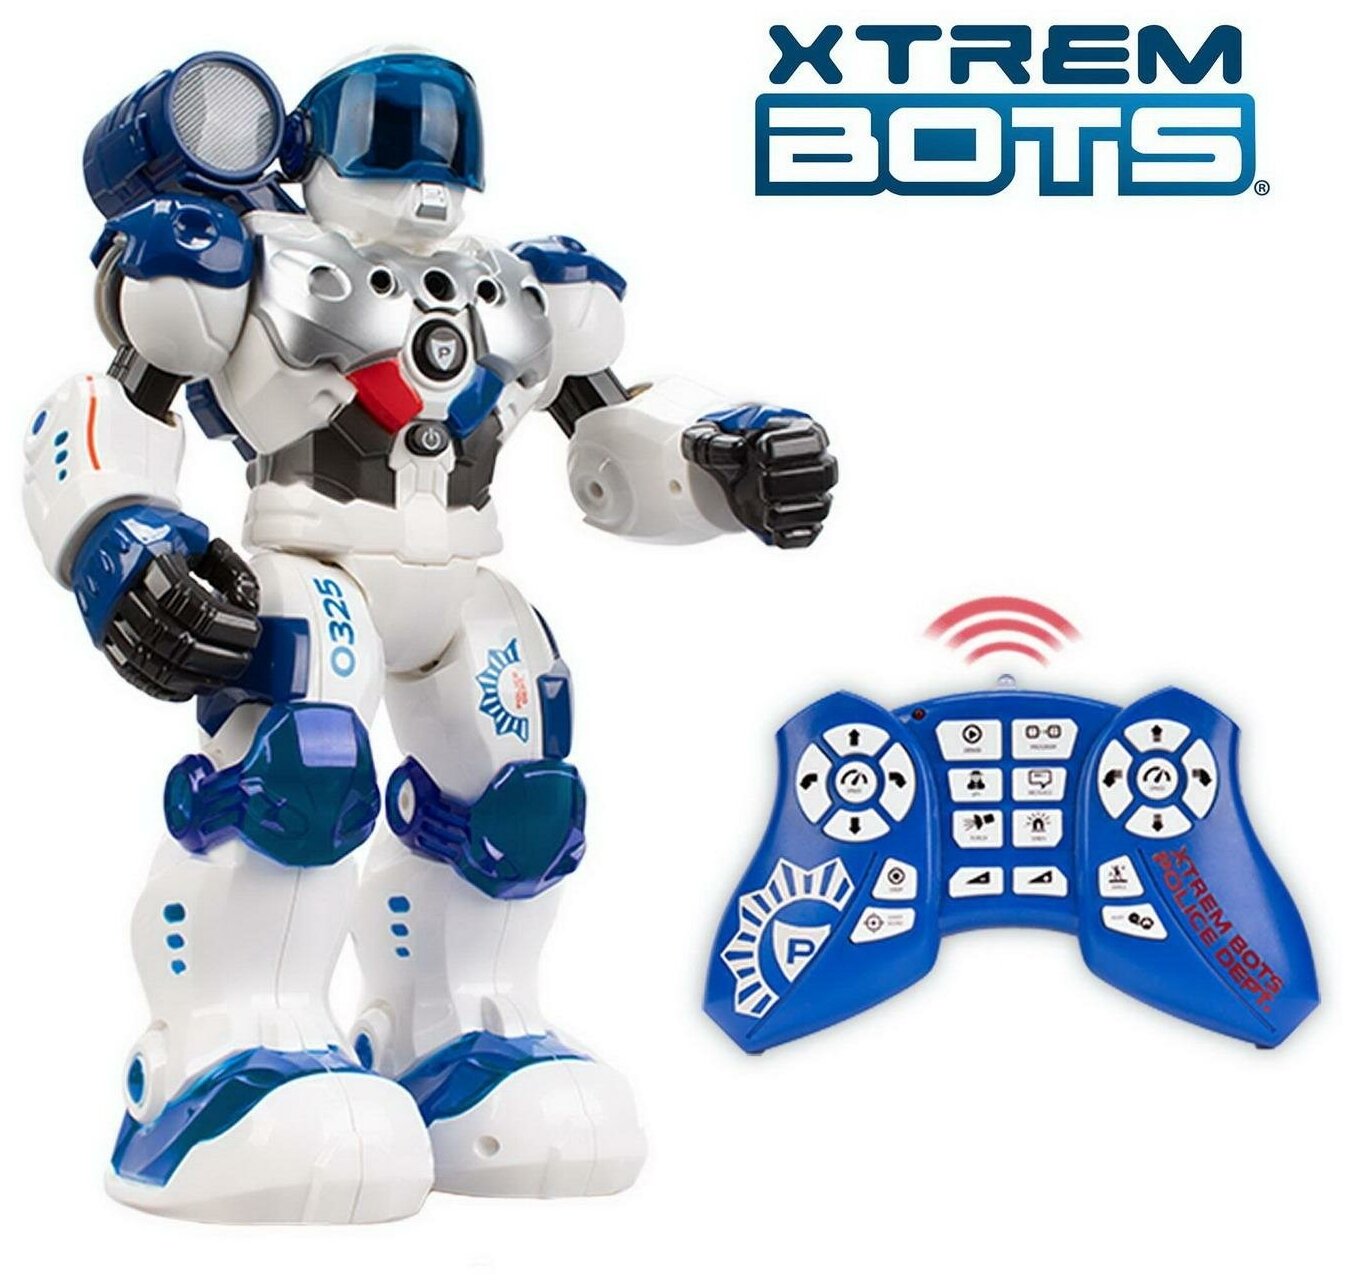 Робот XTREM BOTS Патруль. STEM, ИК управление, световые и звуковые эффекты, более 20 функций